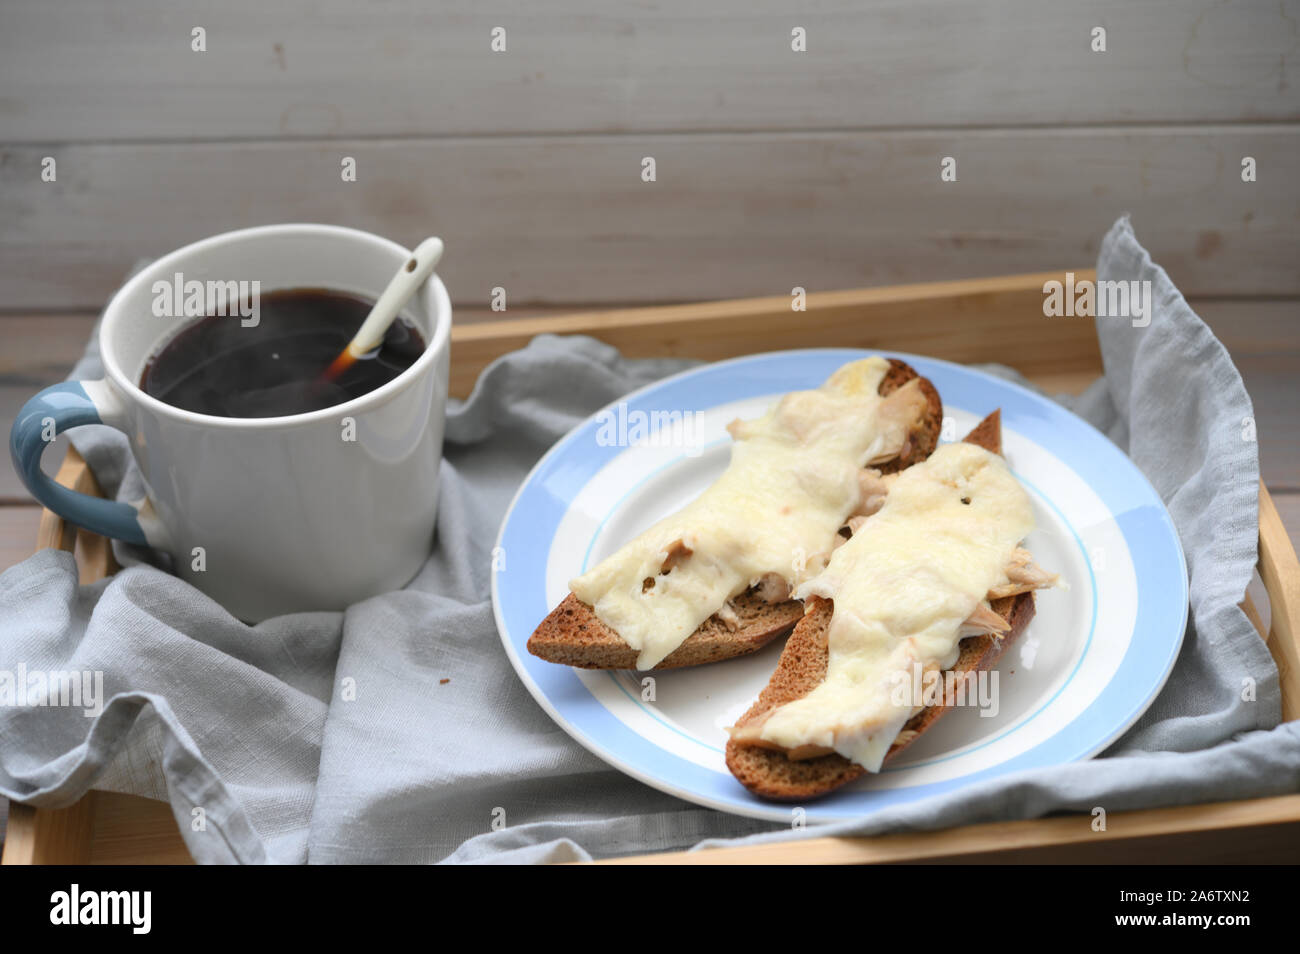 Petit-déjeuner rustique : deux sandwichs baguette chaude avec de la viande de poulet et fromage et une tasse de café noir sur un plateau en bois Banque D'Images